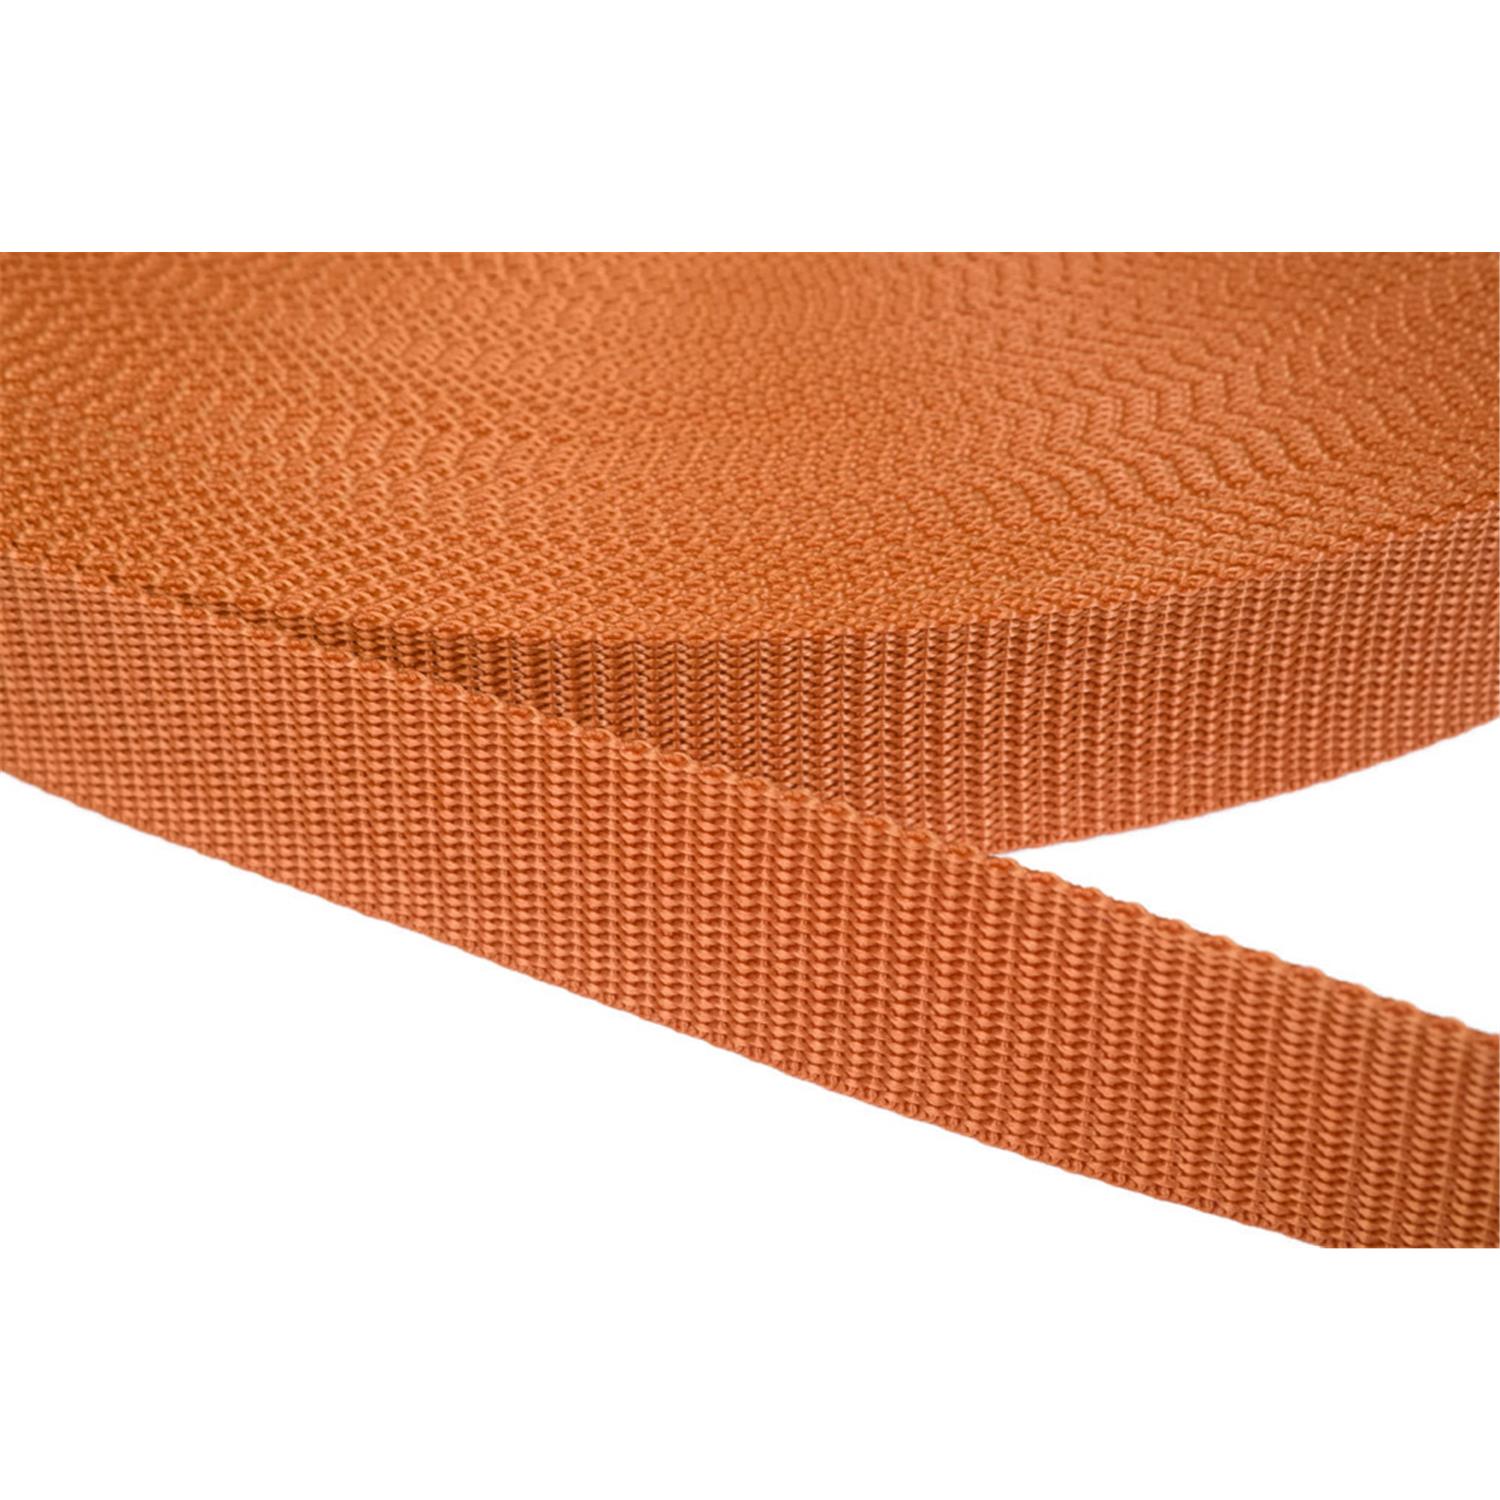 Gurtband 40mm breit aus Polypropylen in 41 Farben 05 - ockerbraun 50 Meter